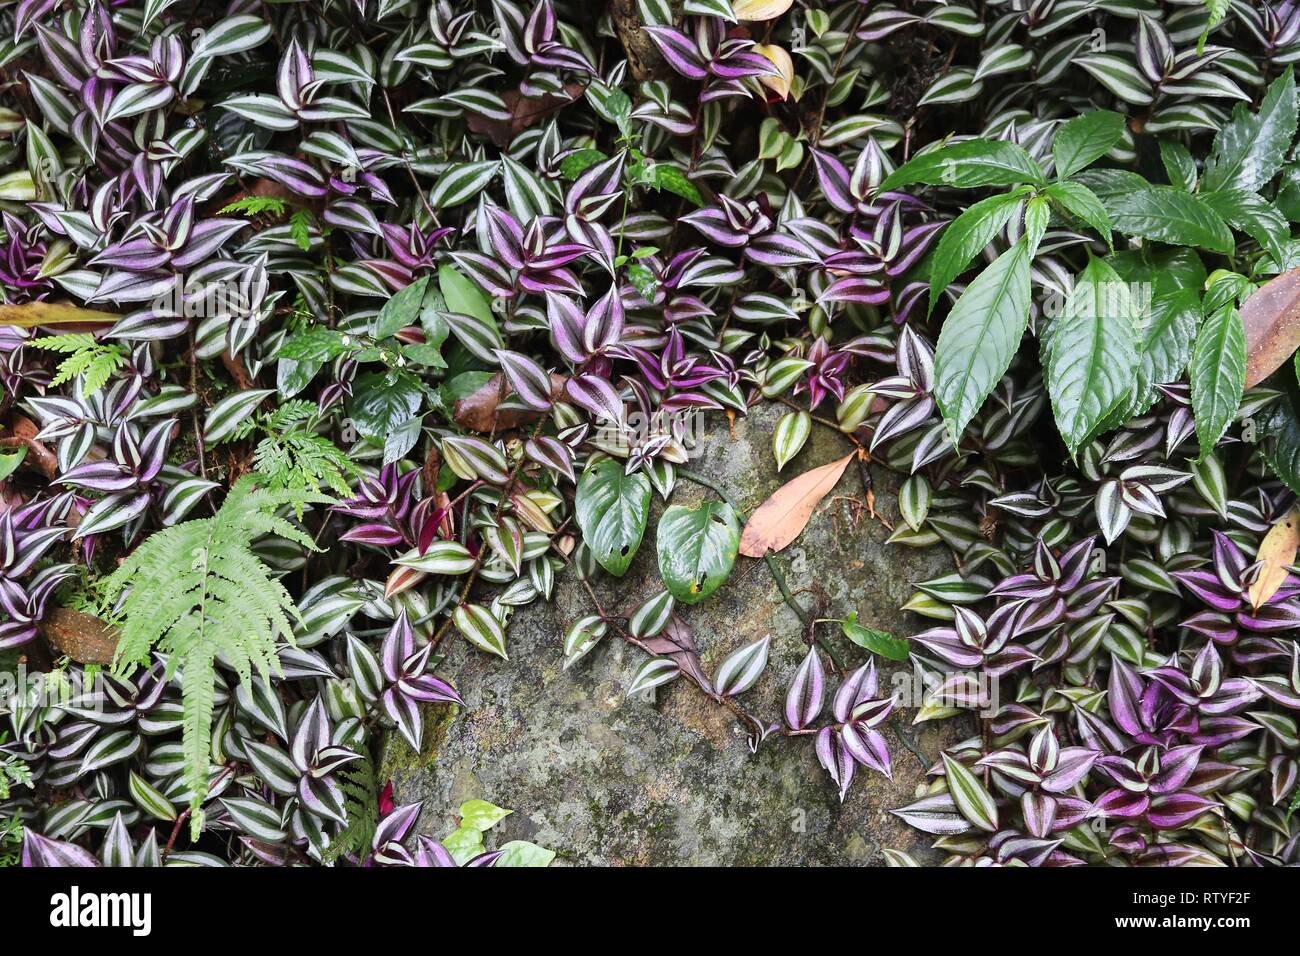 Jungle de Taiwan. Le parc national de Taroko à Taiwan. La flore de la forêt tropicale - Tradescantia zebrina juif errant (plante). Les espèces végétales envahissantes. Banque D'Images